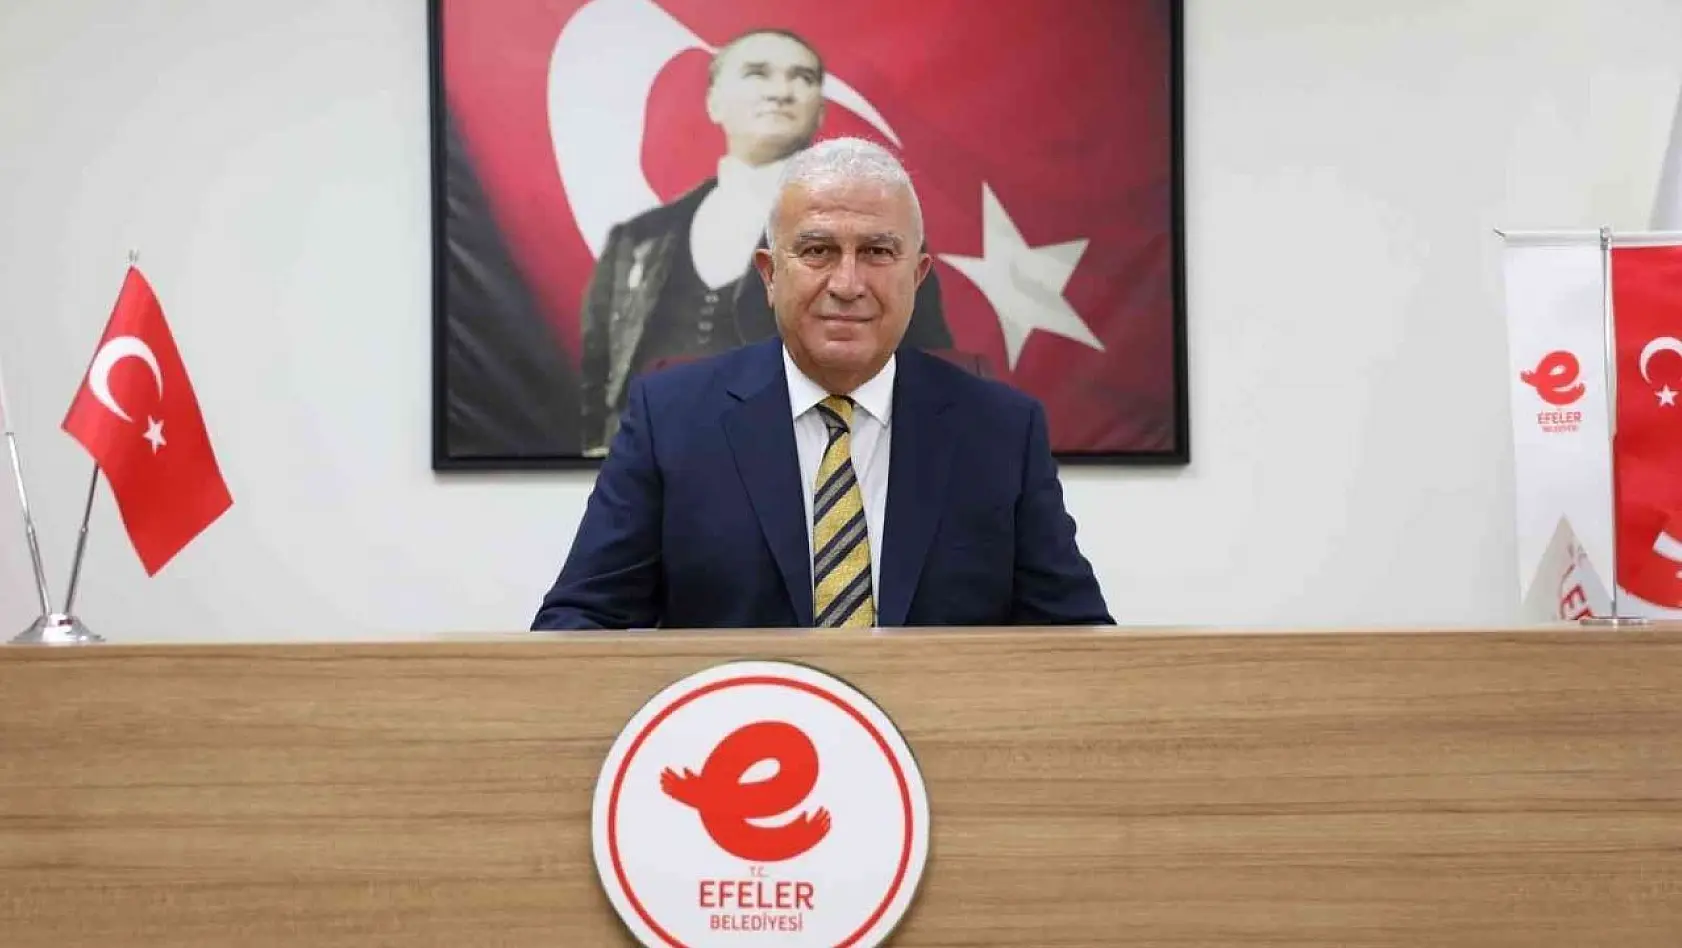 Başkan Atay Türkiye'de ilk 10'da yer aldı